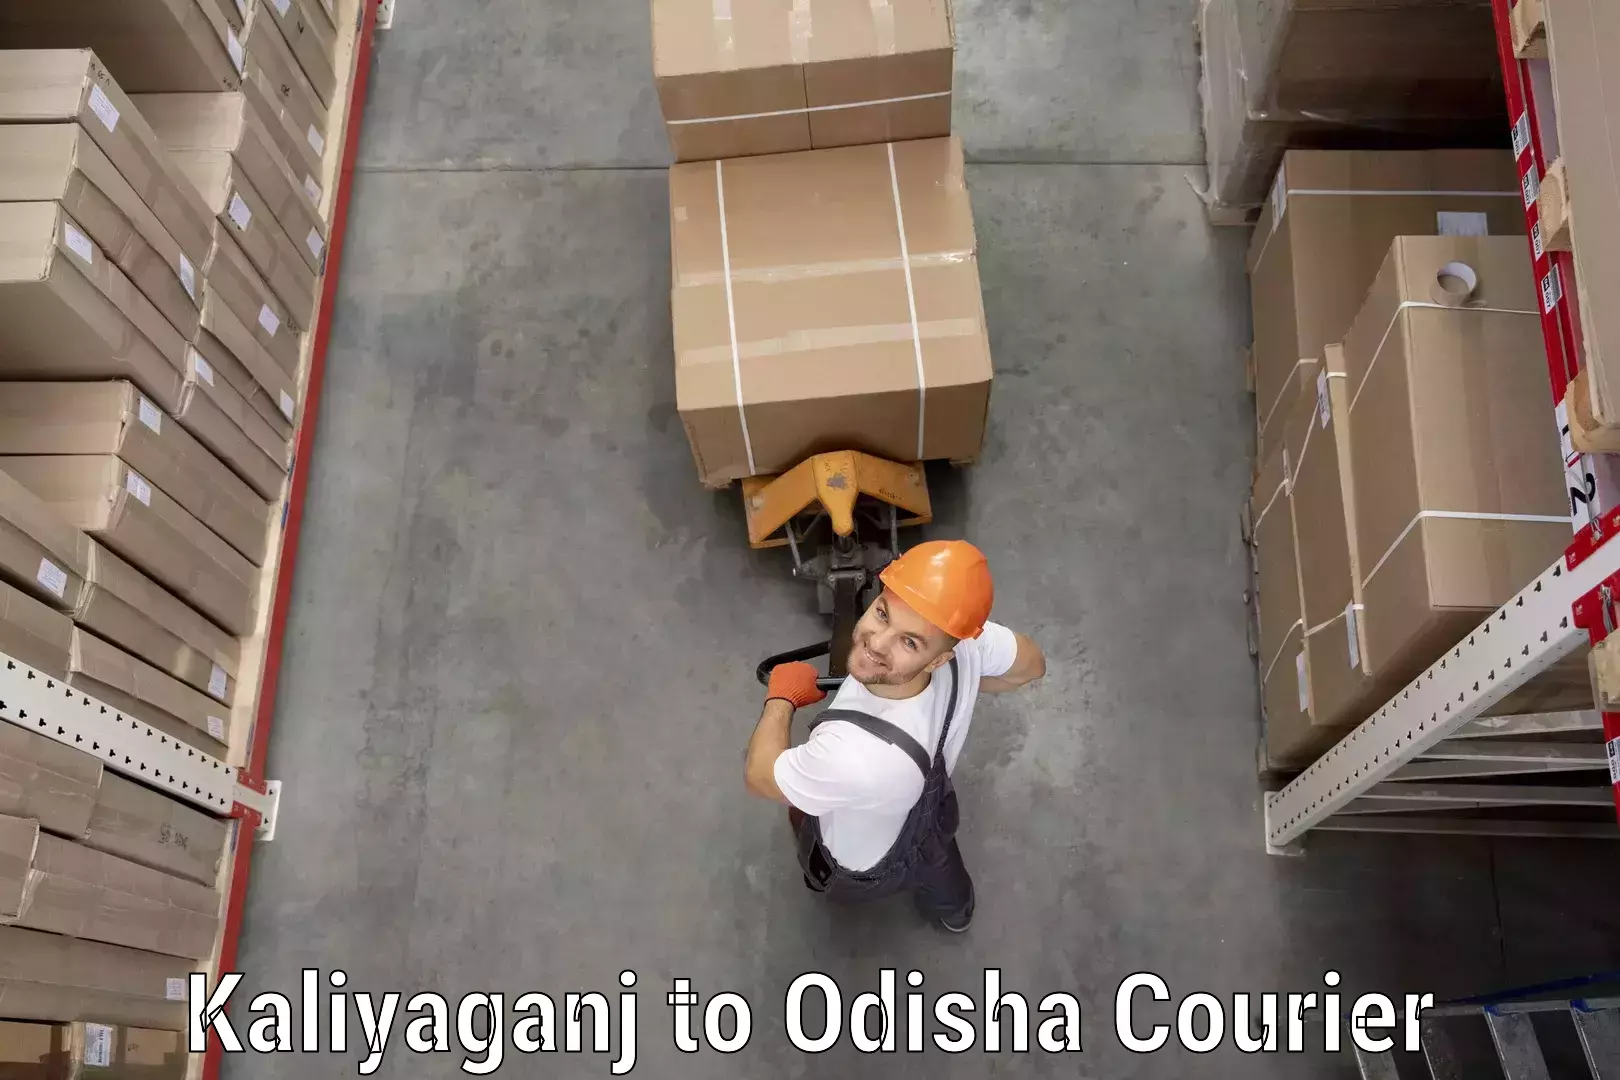 Same-day delivery solutions Kaliyaganj to Tikiri